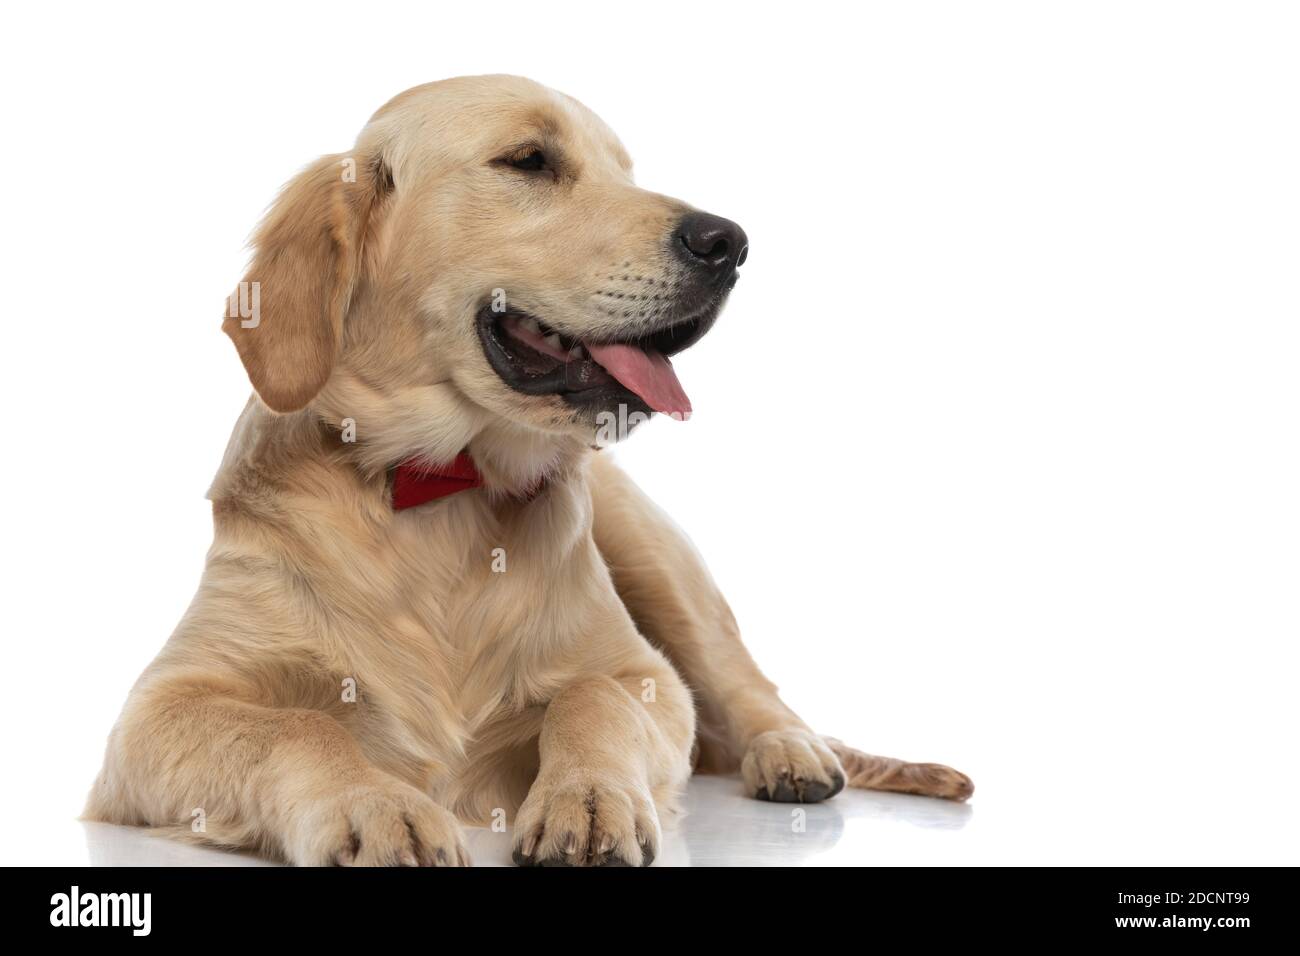 Niedlicher goldener Retriever Hund, der seine Zunge zur Seite streckt, eine  rote Fliege trägt und sich hinlegt Stockfotografie - Alamy